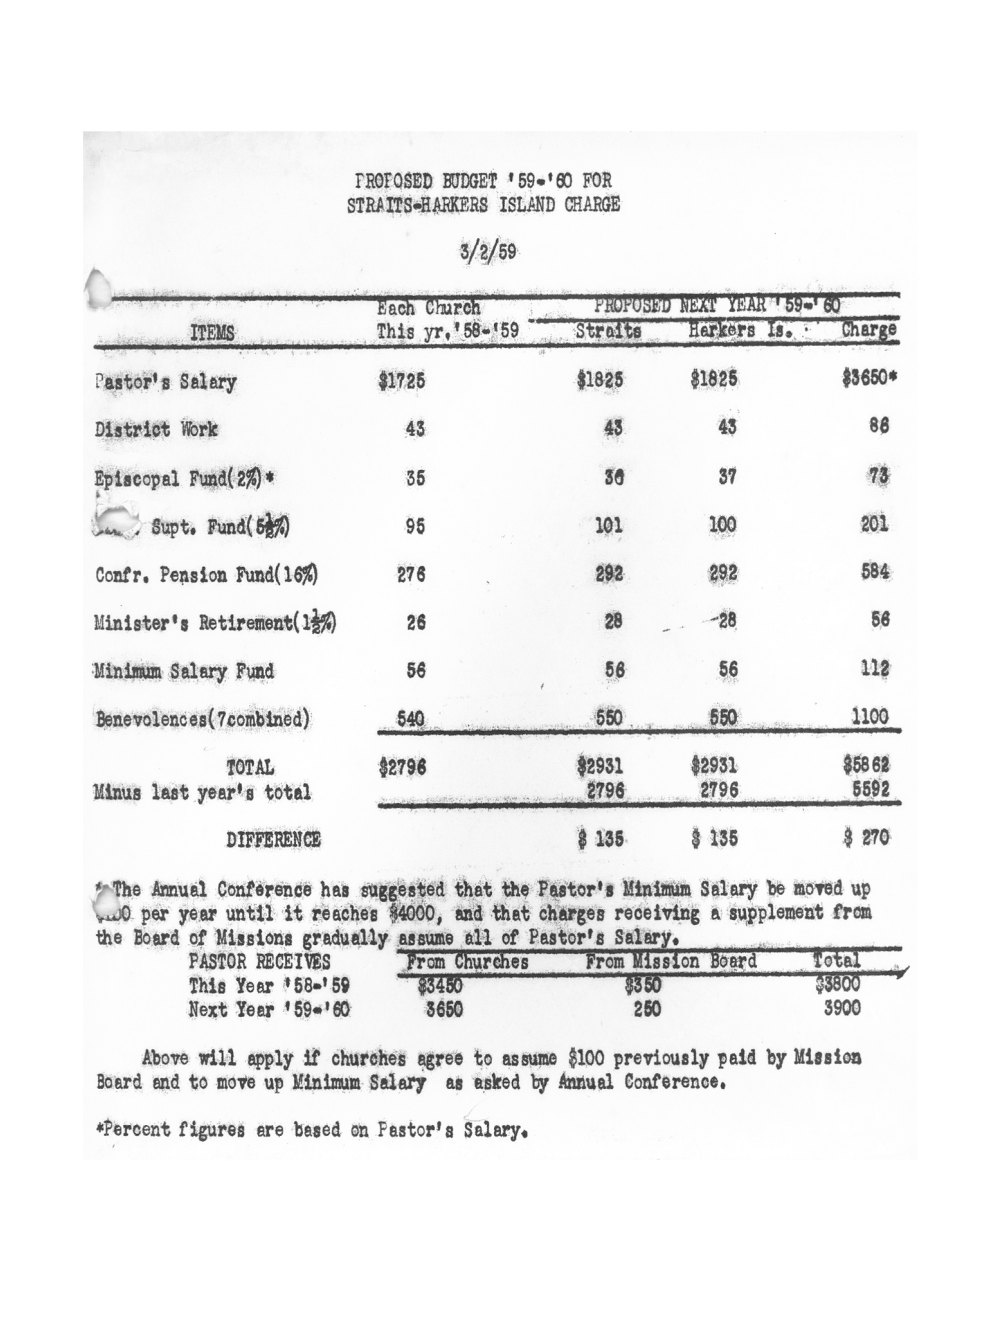 Prop Budget '59-'60